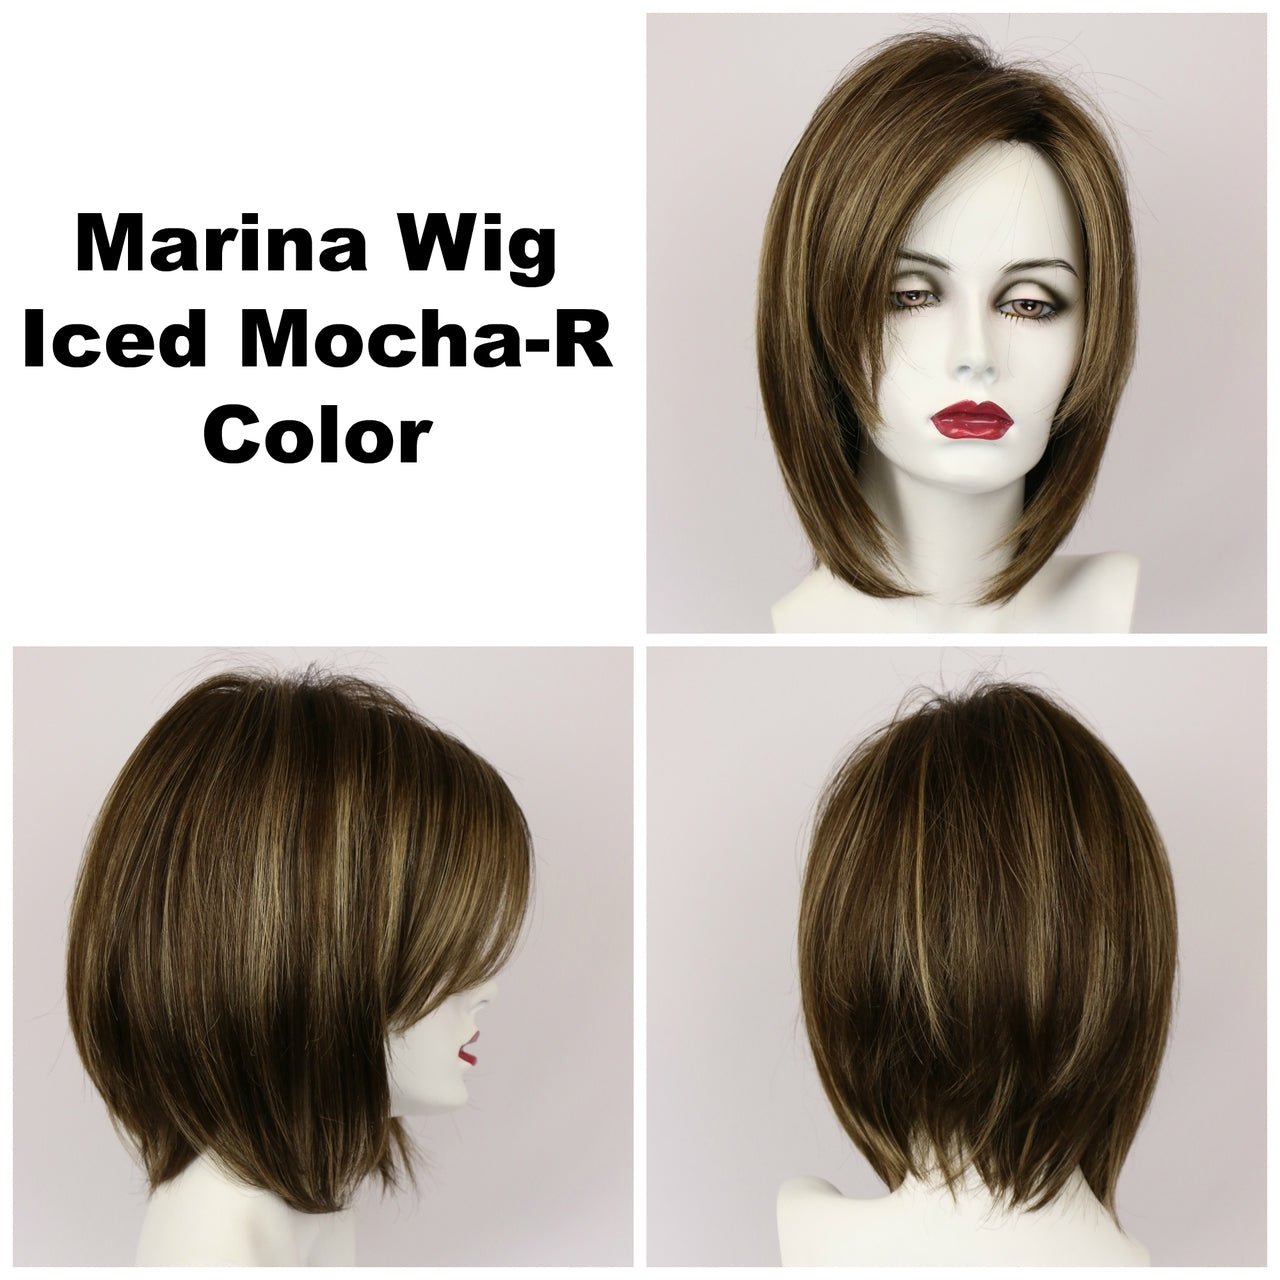 Iced Mocha-R / Marina w/ Roots / Medium Wig